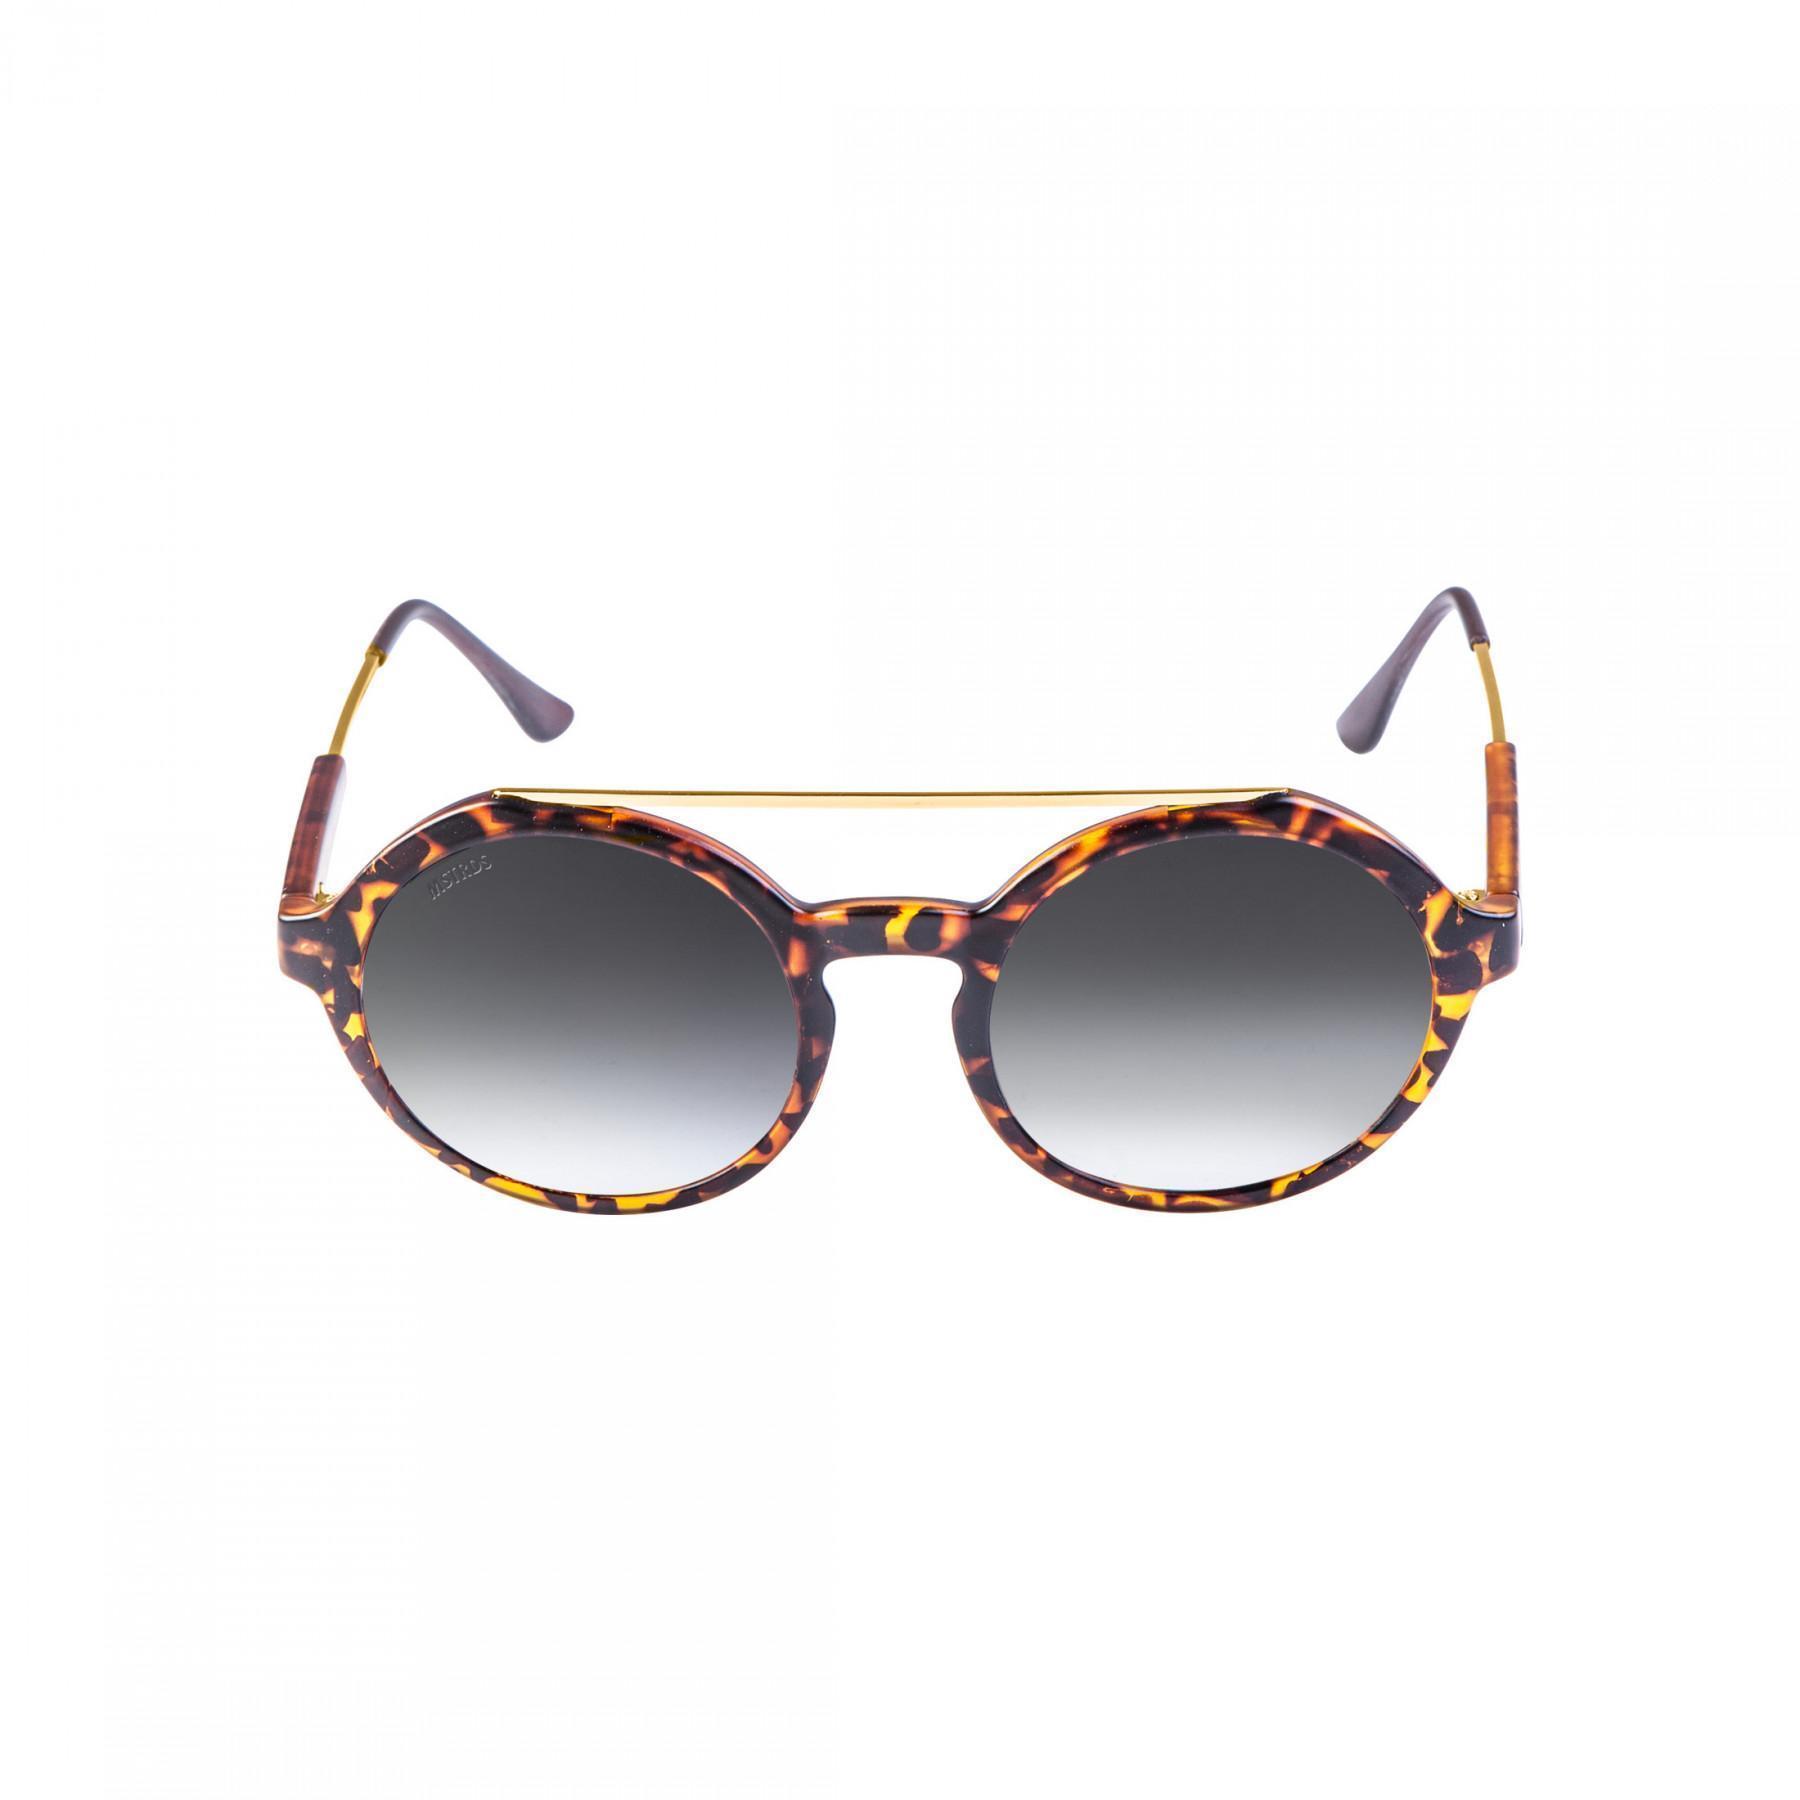 Sunglasses Masterdis retro space